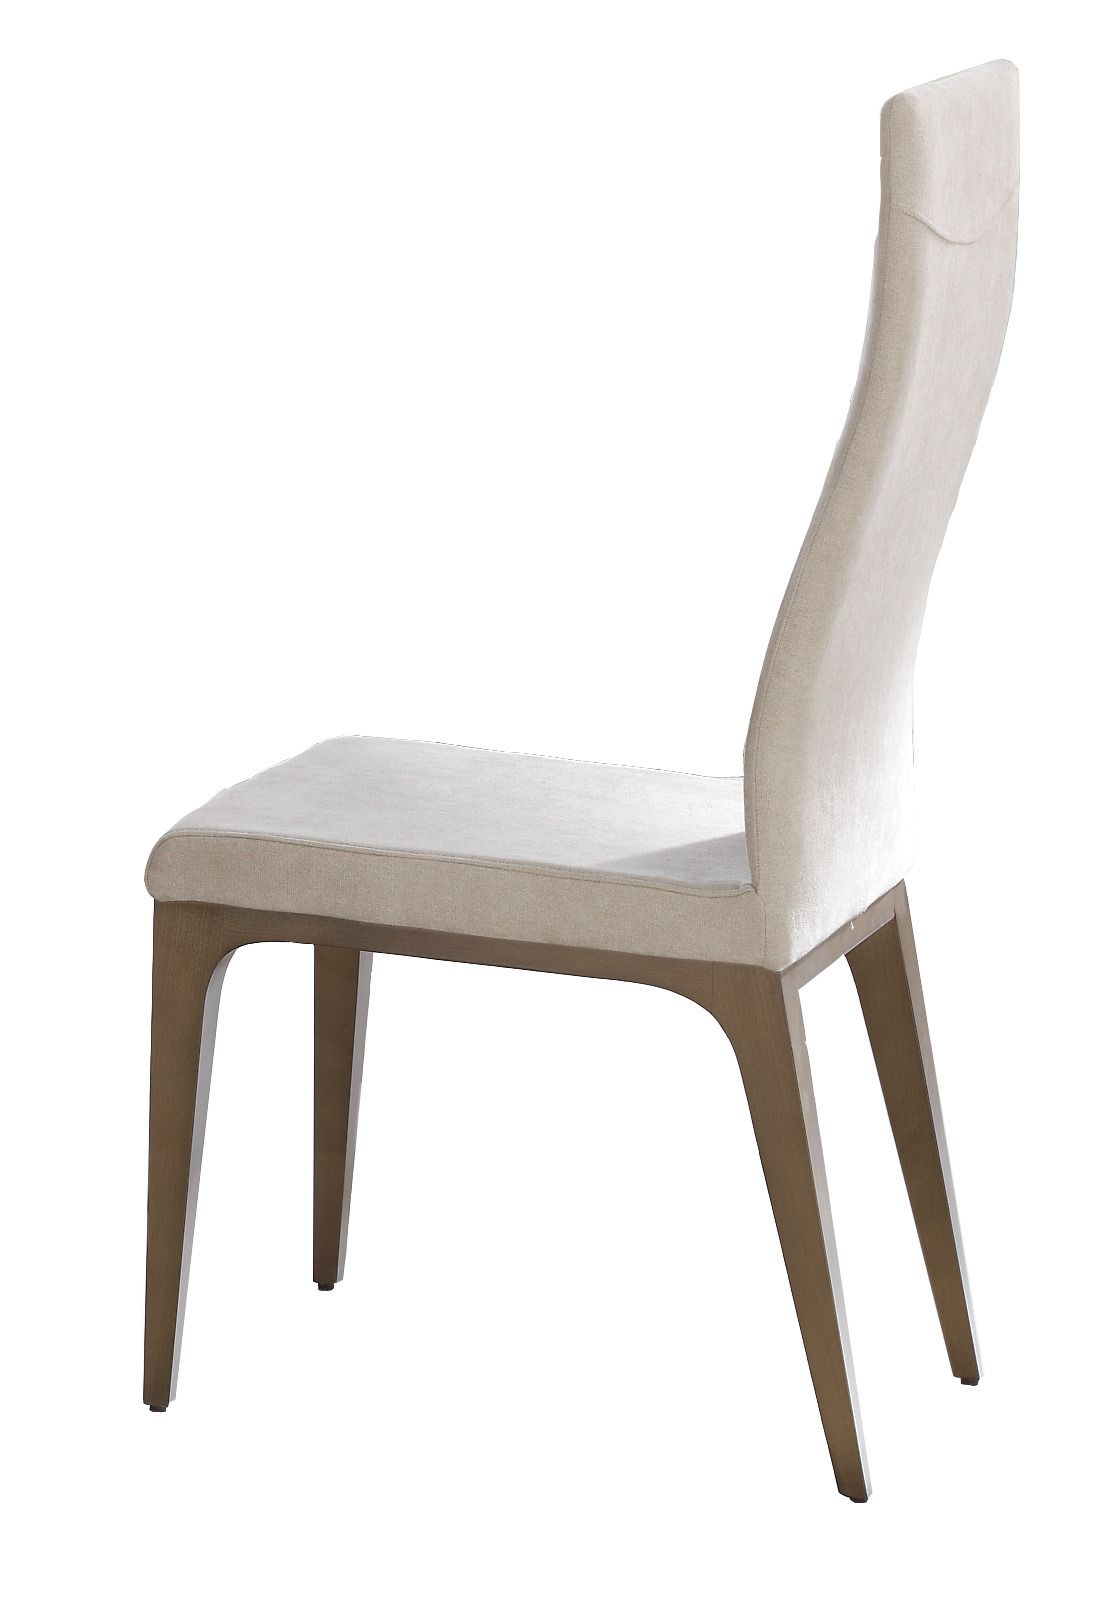 Bedroom Furniture Nightstands Igni chair